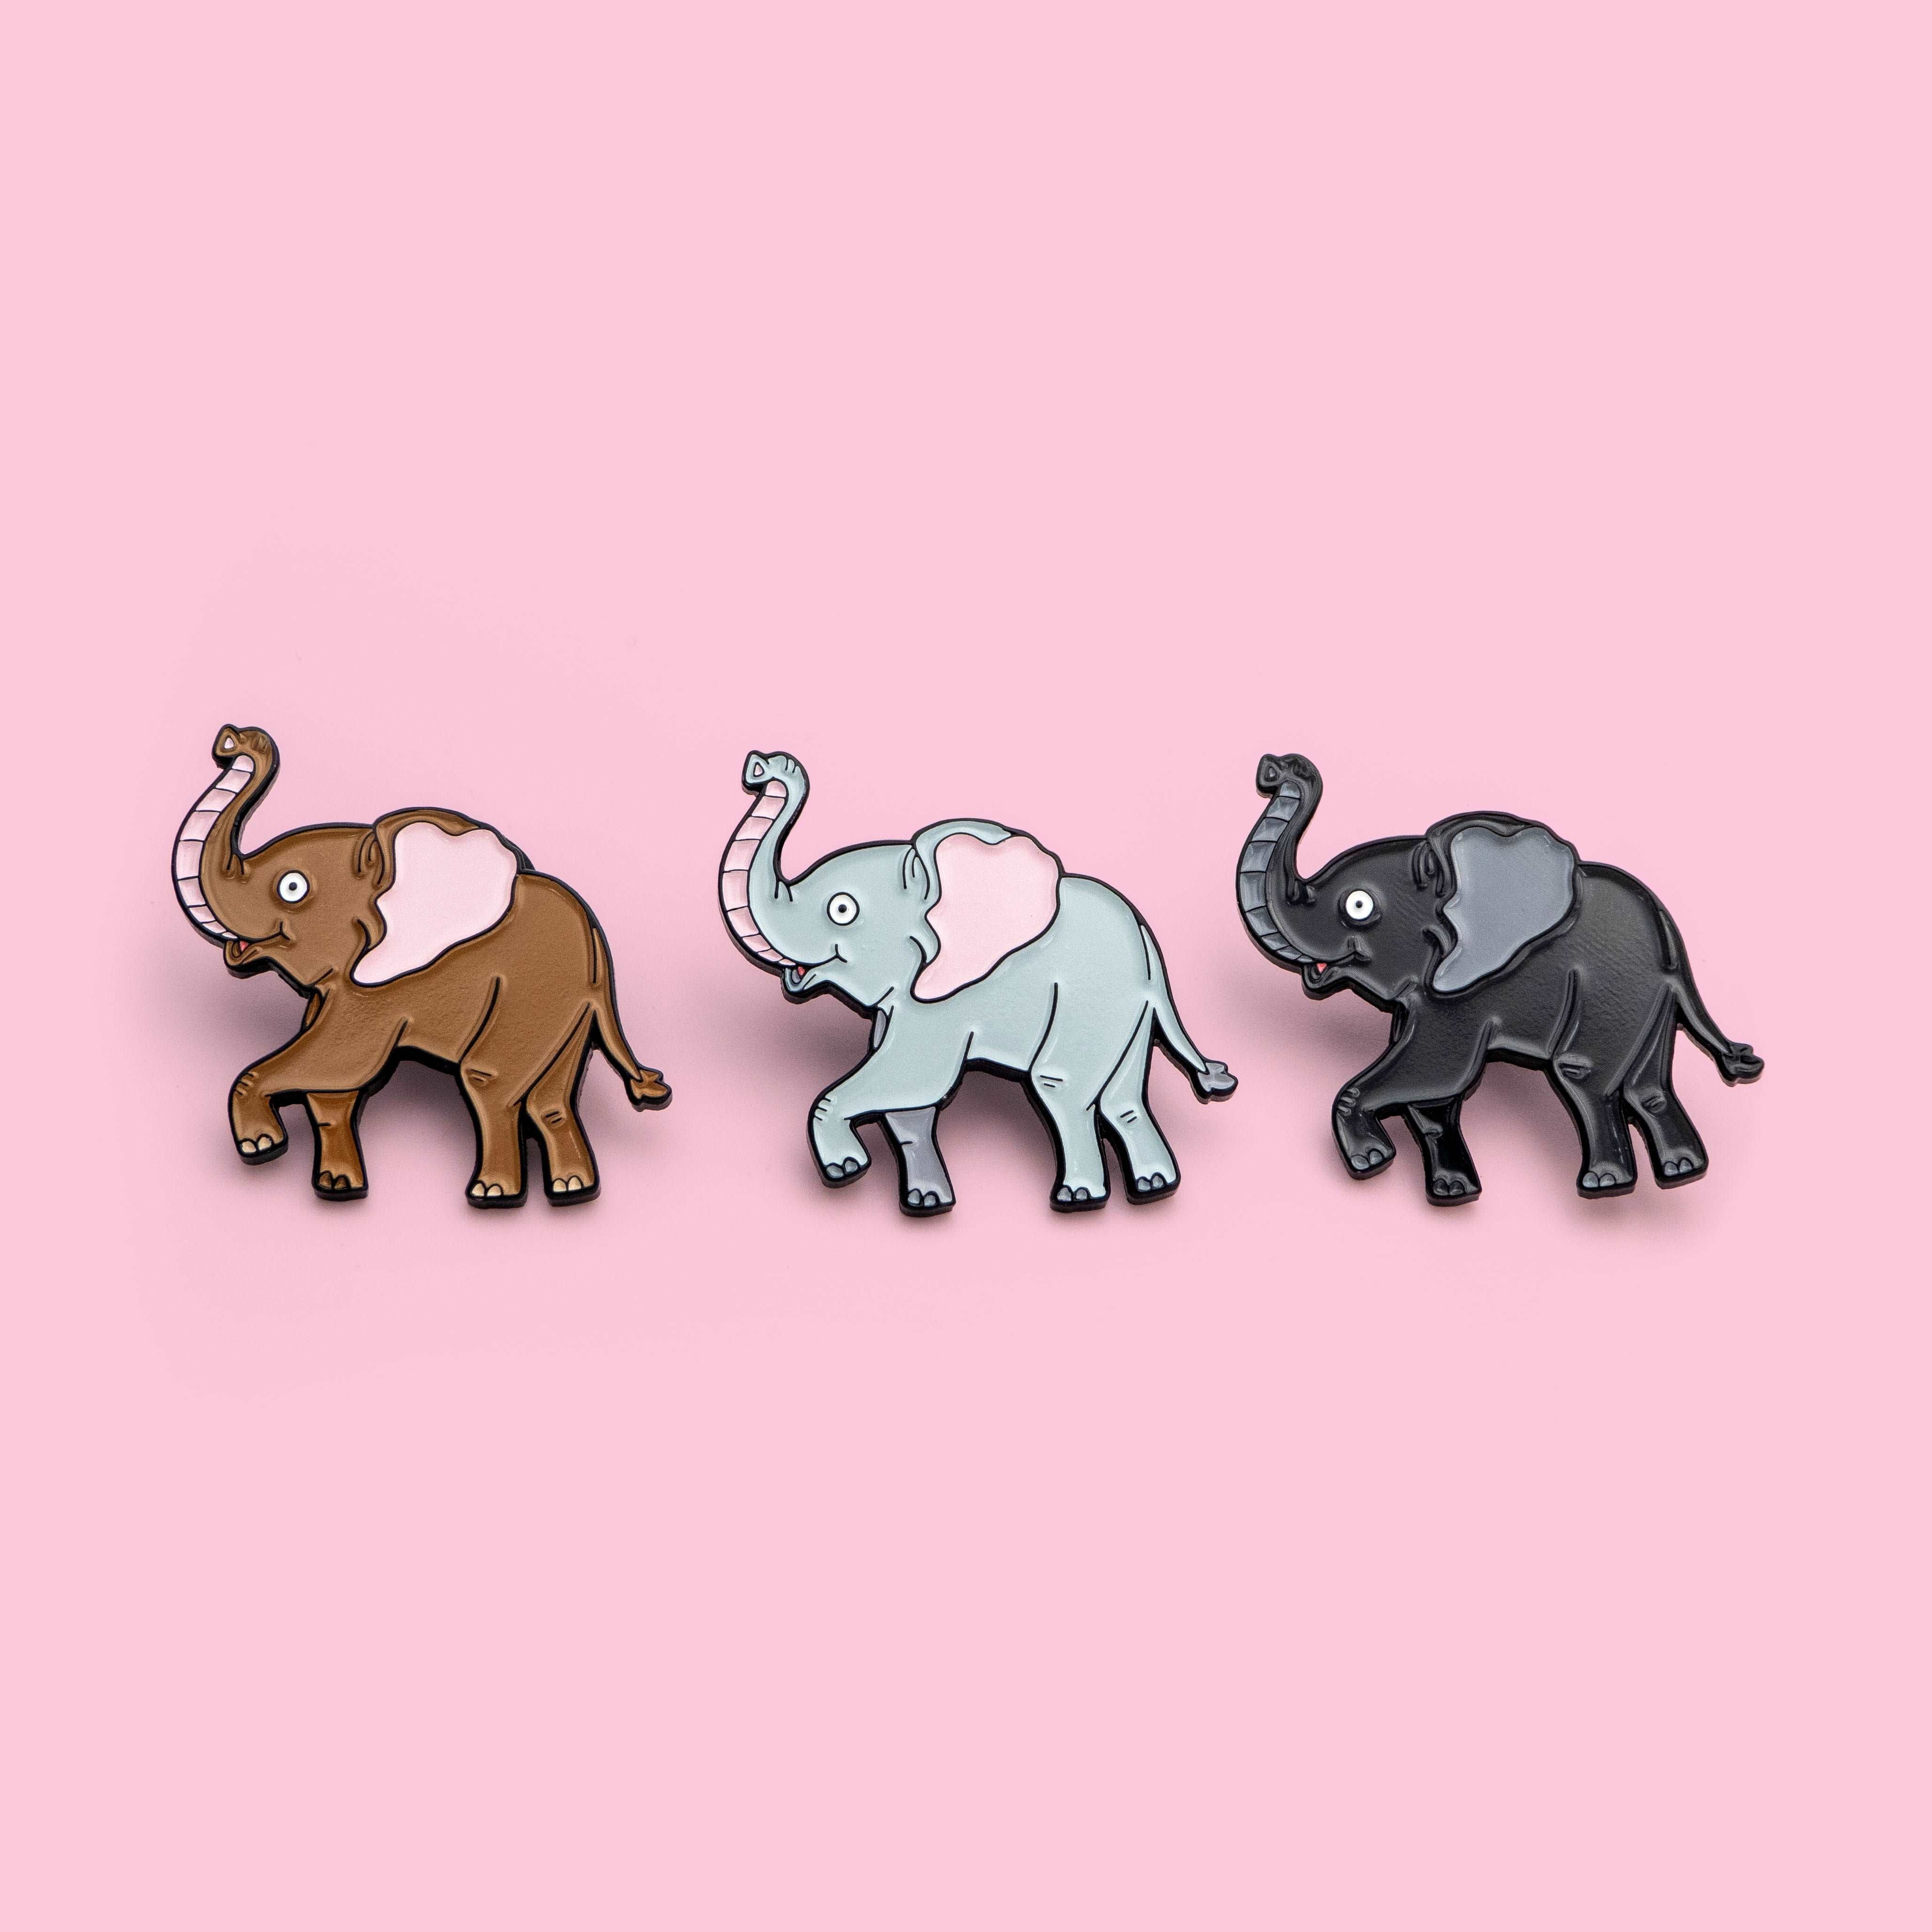 Three enamel pins of cartoon elephants on a pink background - Elephant